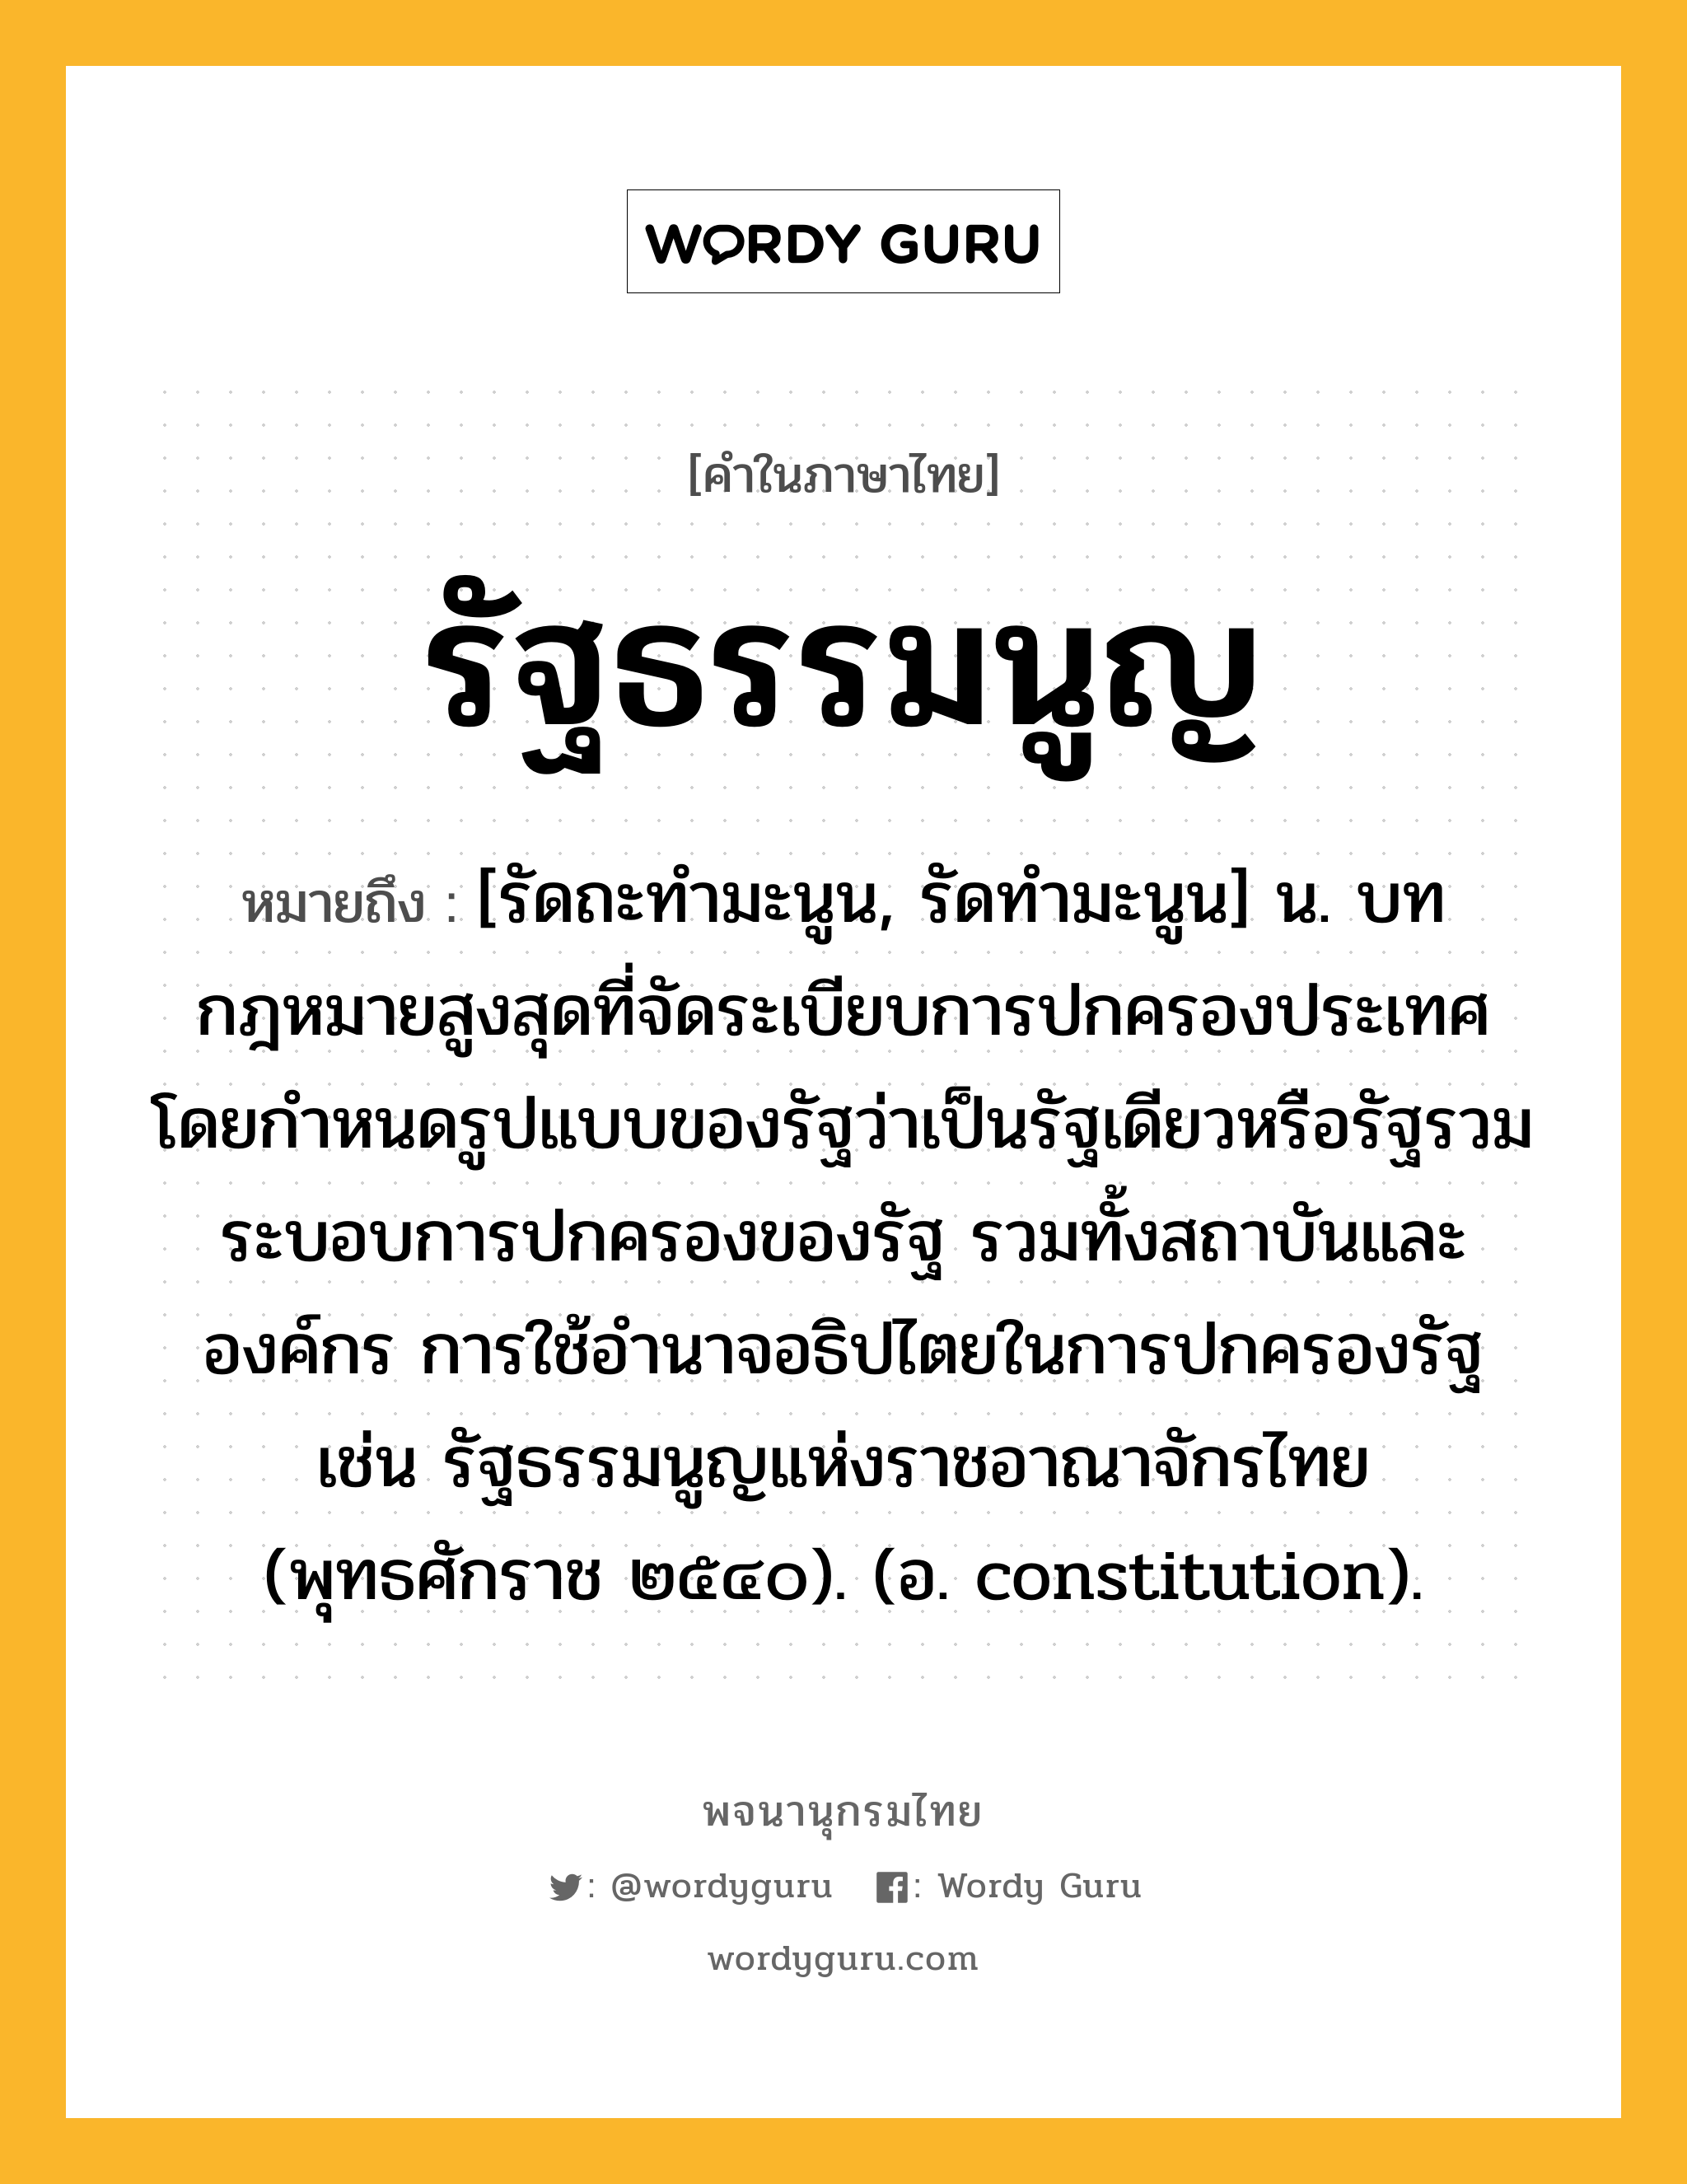 รัฐธรรมนูญ ความหมาย หมายถึงอะไร?, คำในภาษาไทย รัฐธรรมนูญ หมายถึง [รัดถะทํามะนูน, รัดทํามะนูน] น. บทกฎหมายสูงสุดที่จัดระเบียบการปกครองประเทศ โดยกำหนดรูปแบบของรัฐว่าเป็นรัฐเดียวหรือรัฐรวม ระบอบการปกครองของรัฐ รวมทั้งสถาบันและองค์กร การใช้อำนาจอธิปไตยในการปกครองรัฐ เช่น รัฐธรรมนูญแห่งราชอาณาจักรไทย (พุทธศักราช ๒๕๔๐). (อ. constitution).